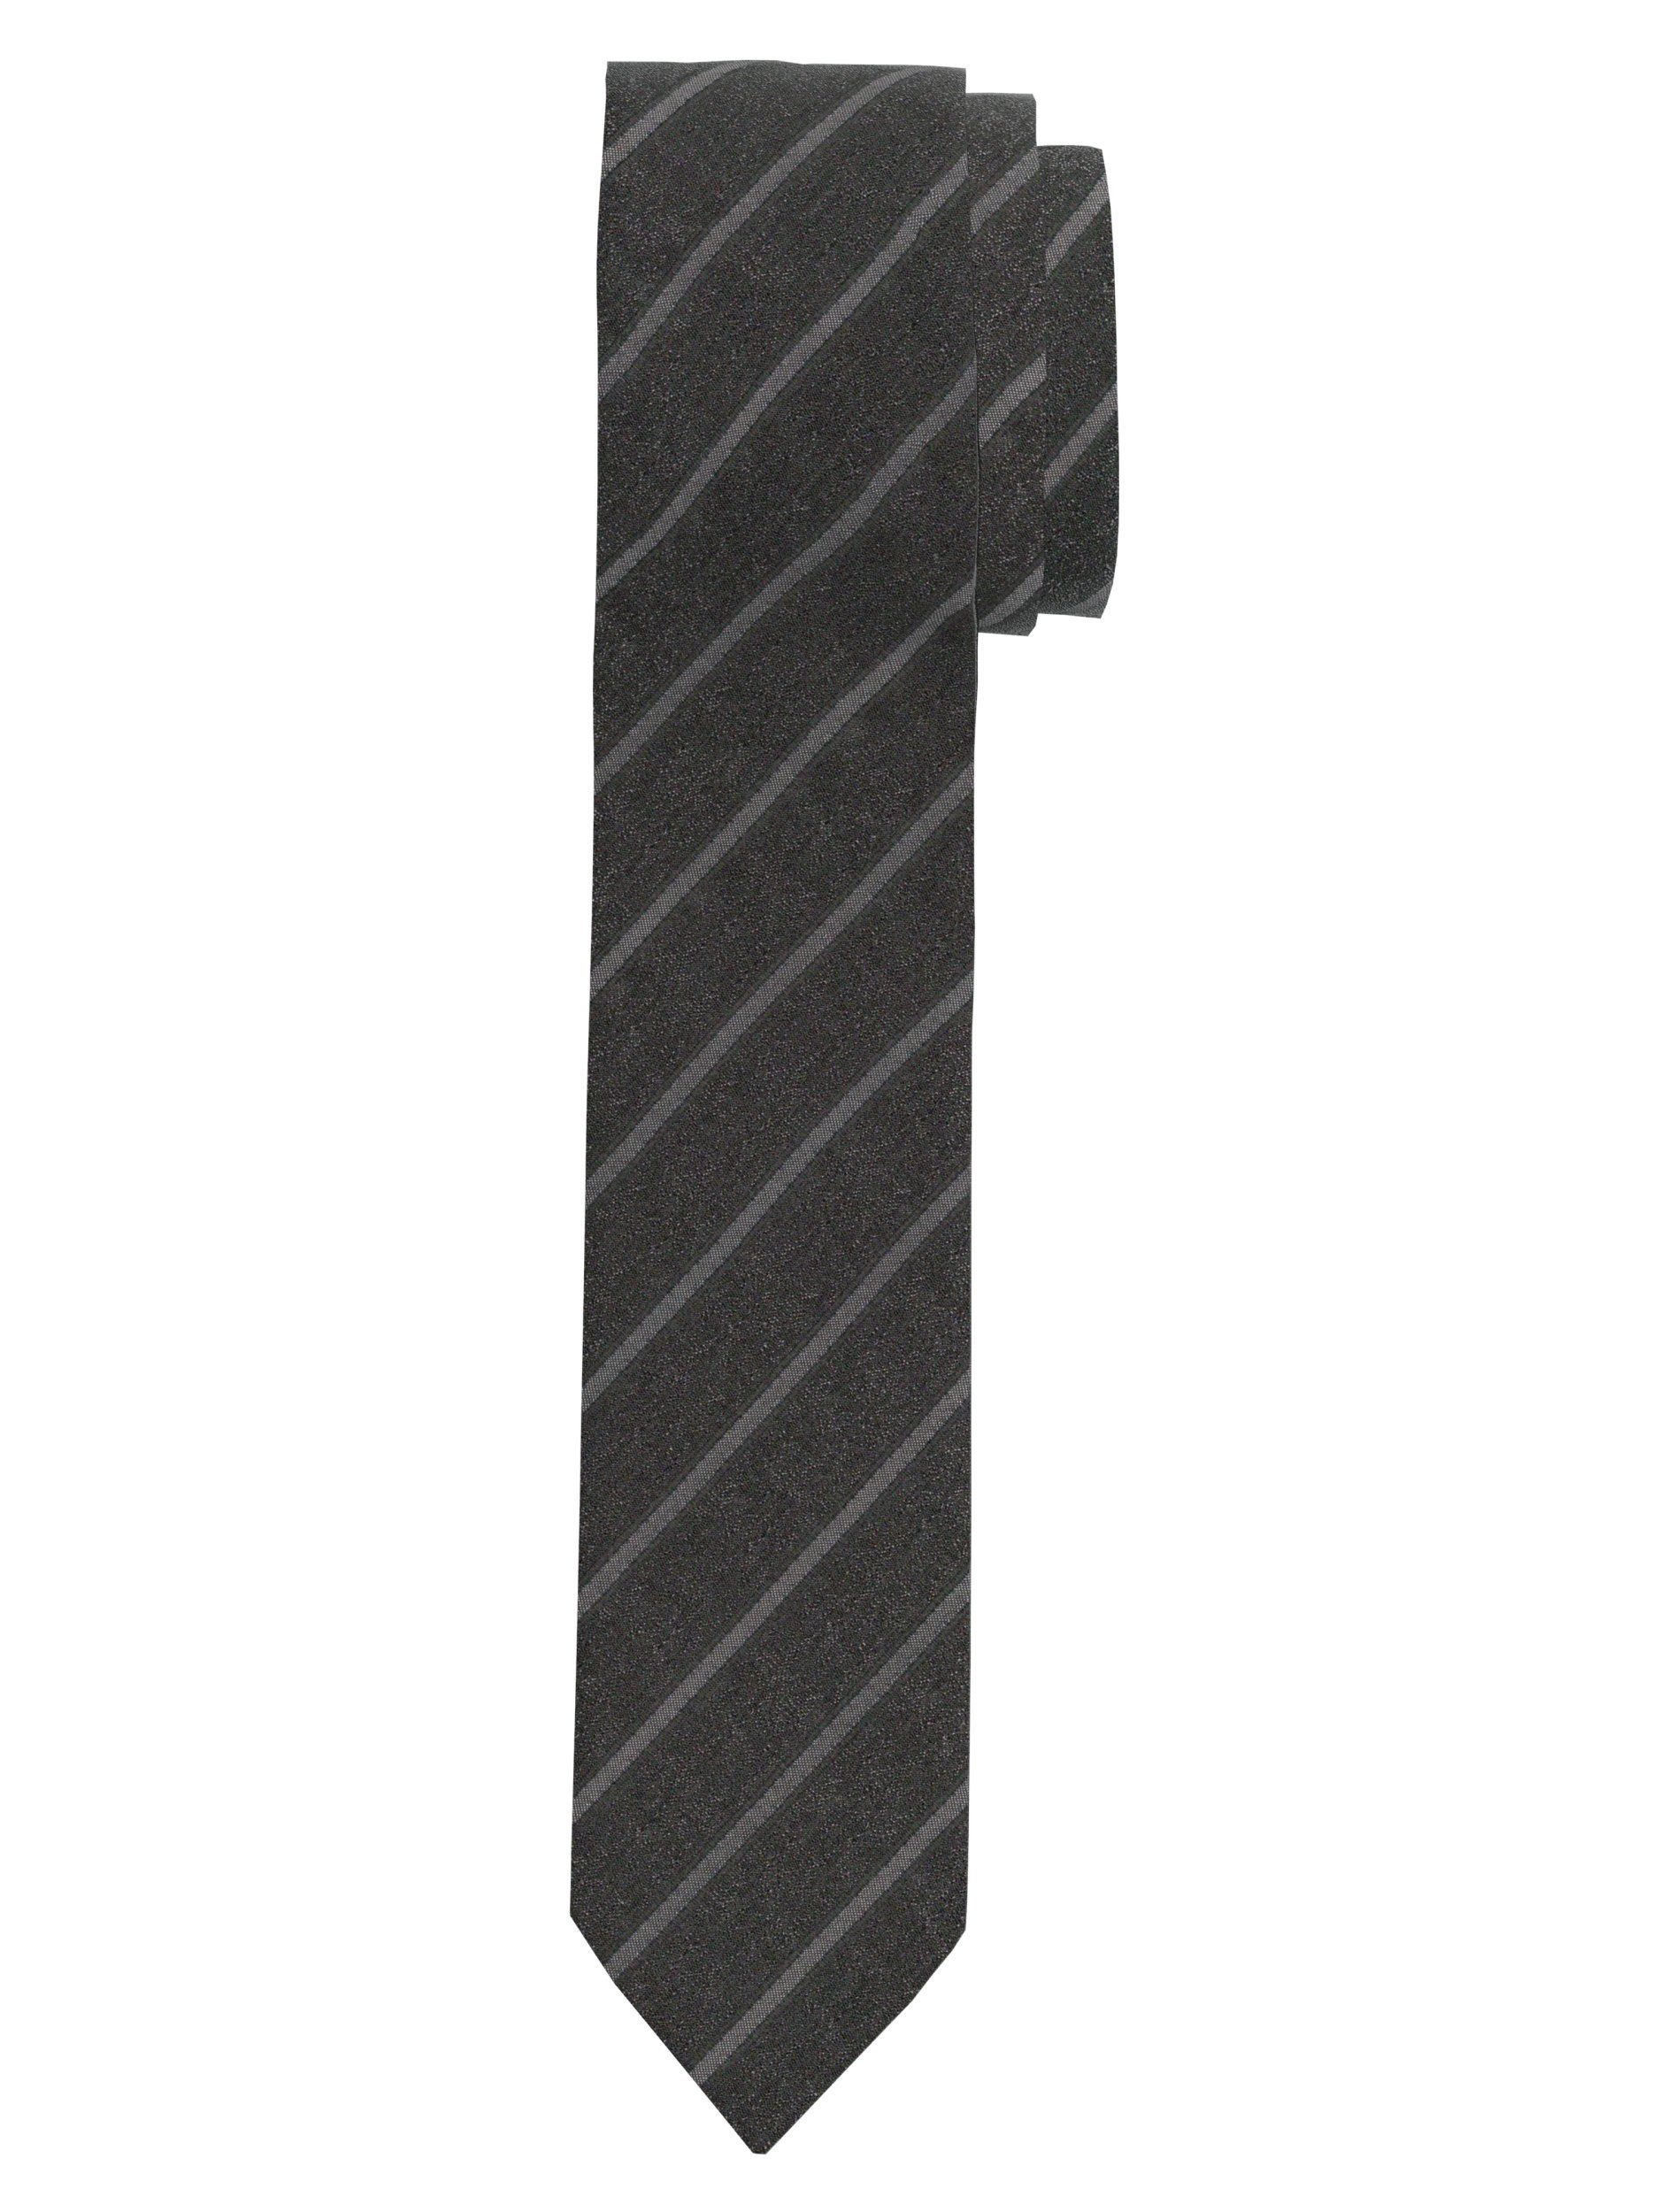 OLYMP Krawatte 1738/00 Krawatten 67